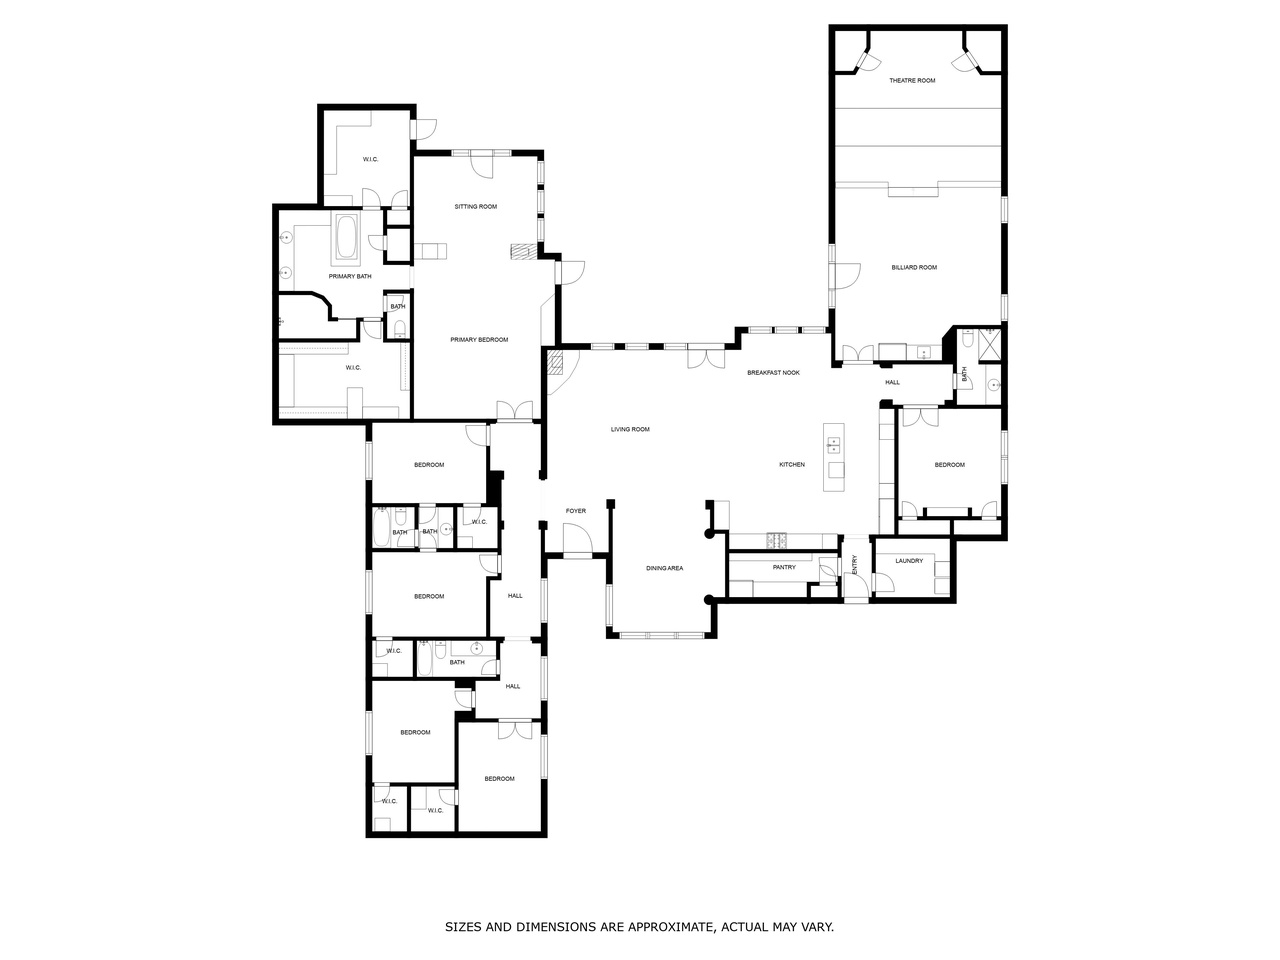 Floor Plan of Main Home